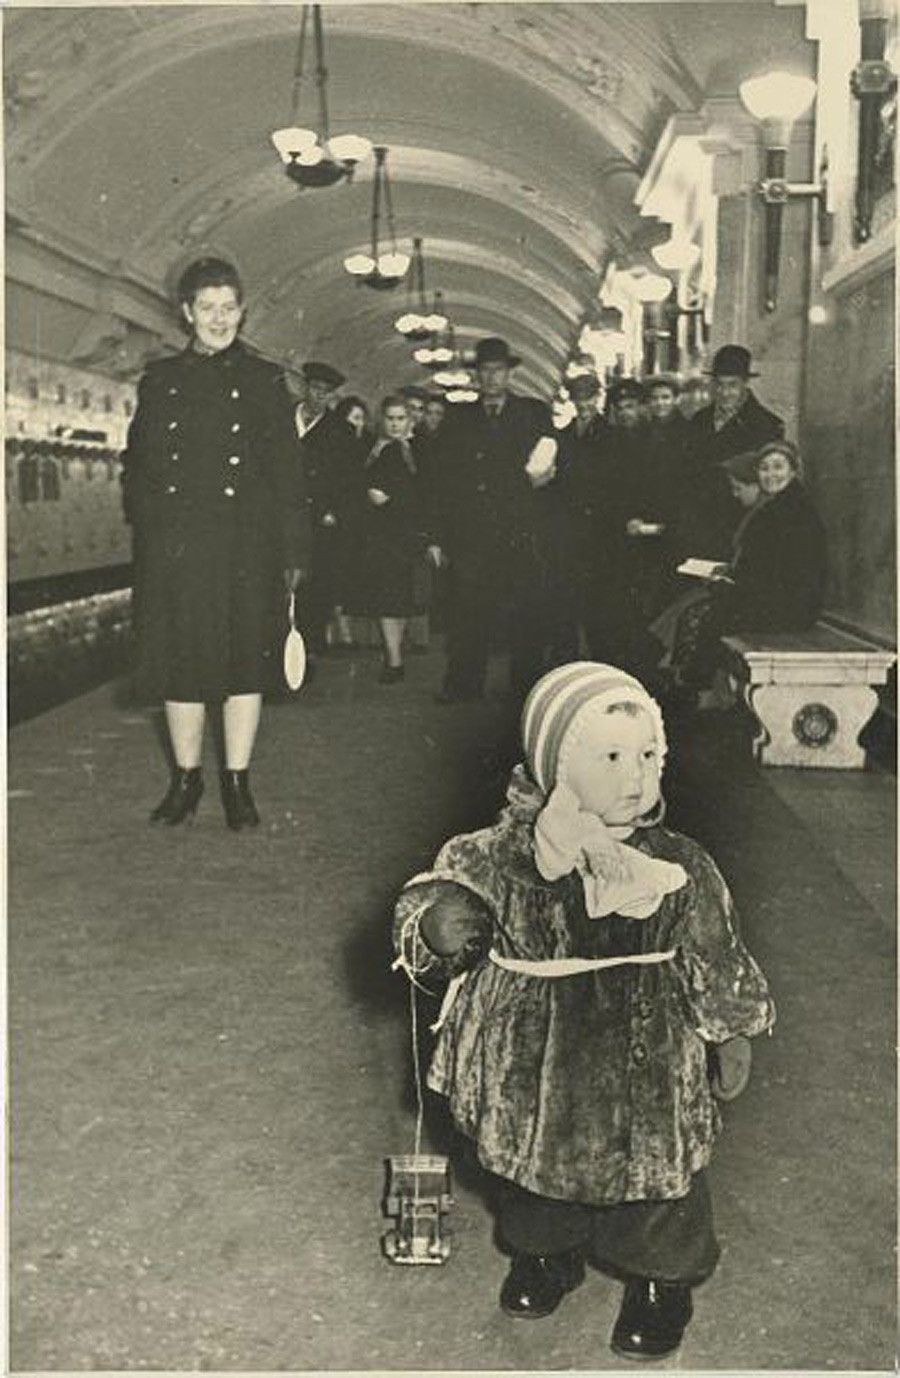 Di stasiun kereta bawah tanah, 1950-an.